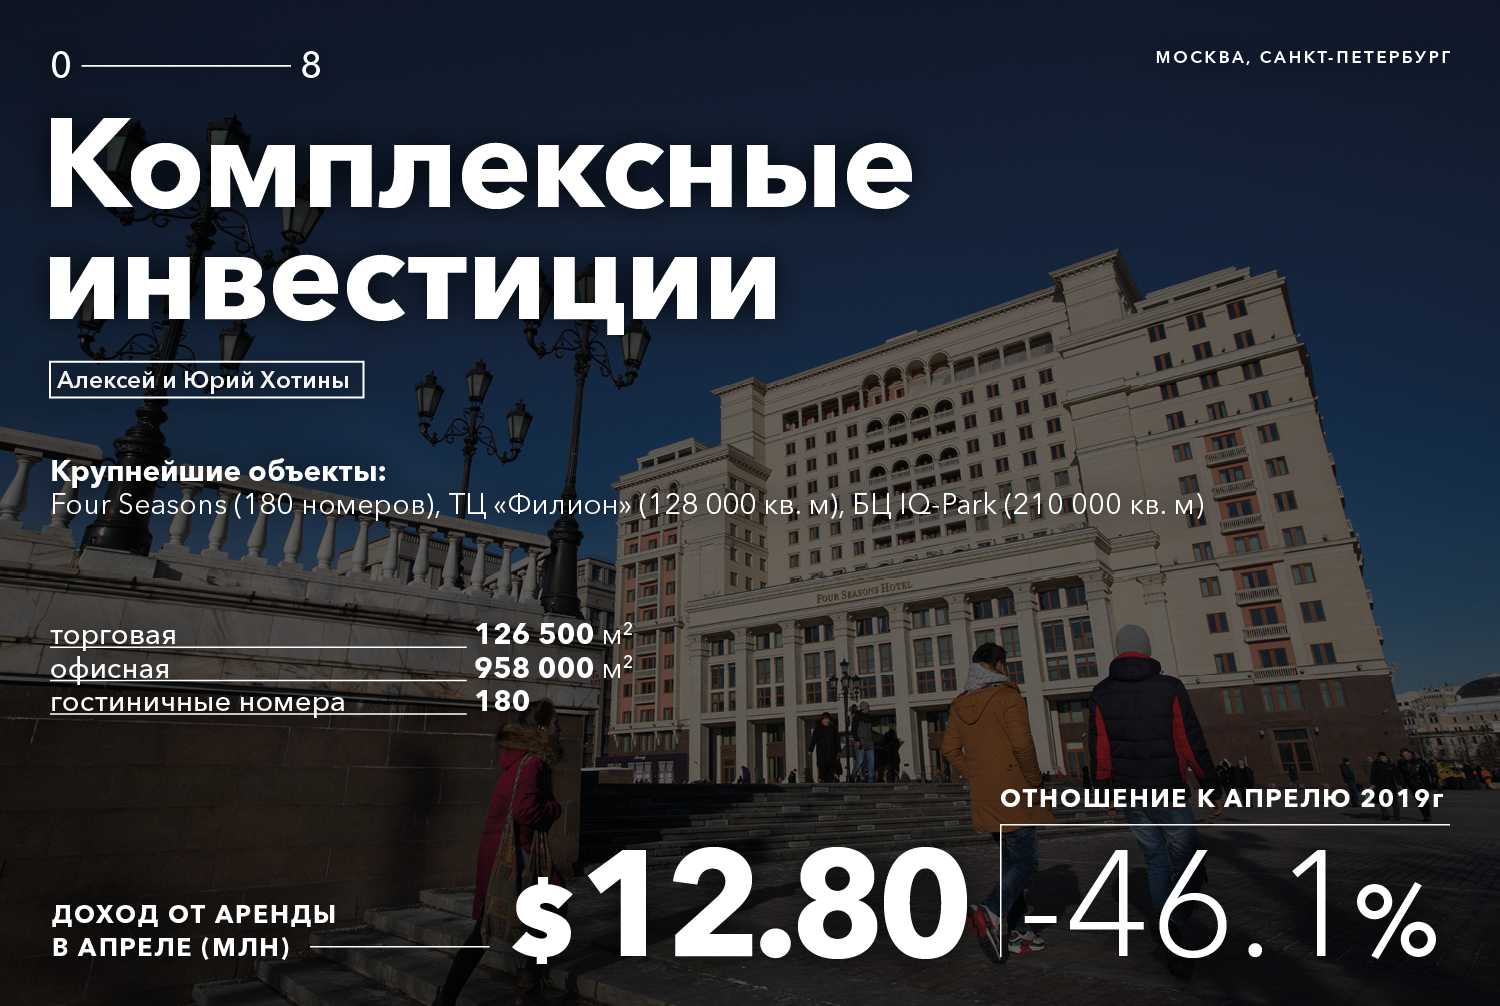 Сколько потеряли из-за пандемии короли российской недвижимости